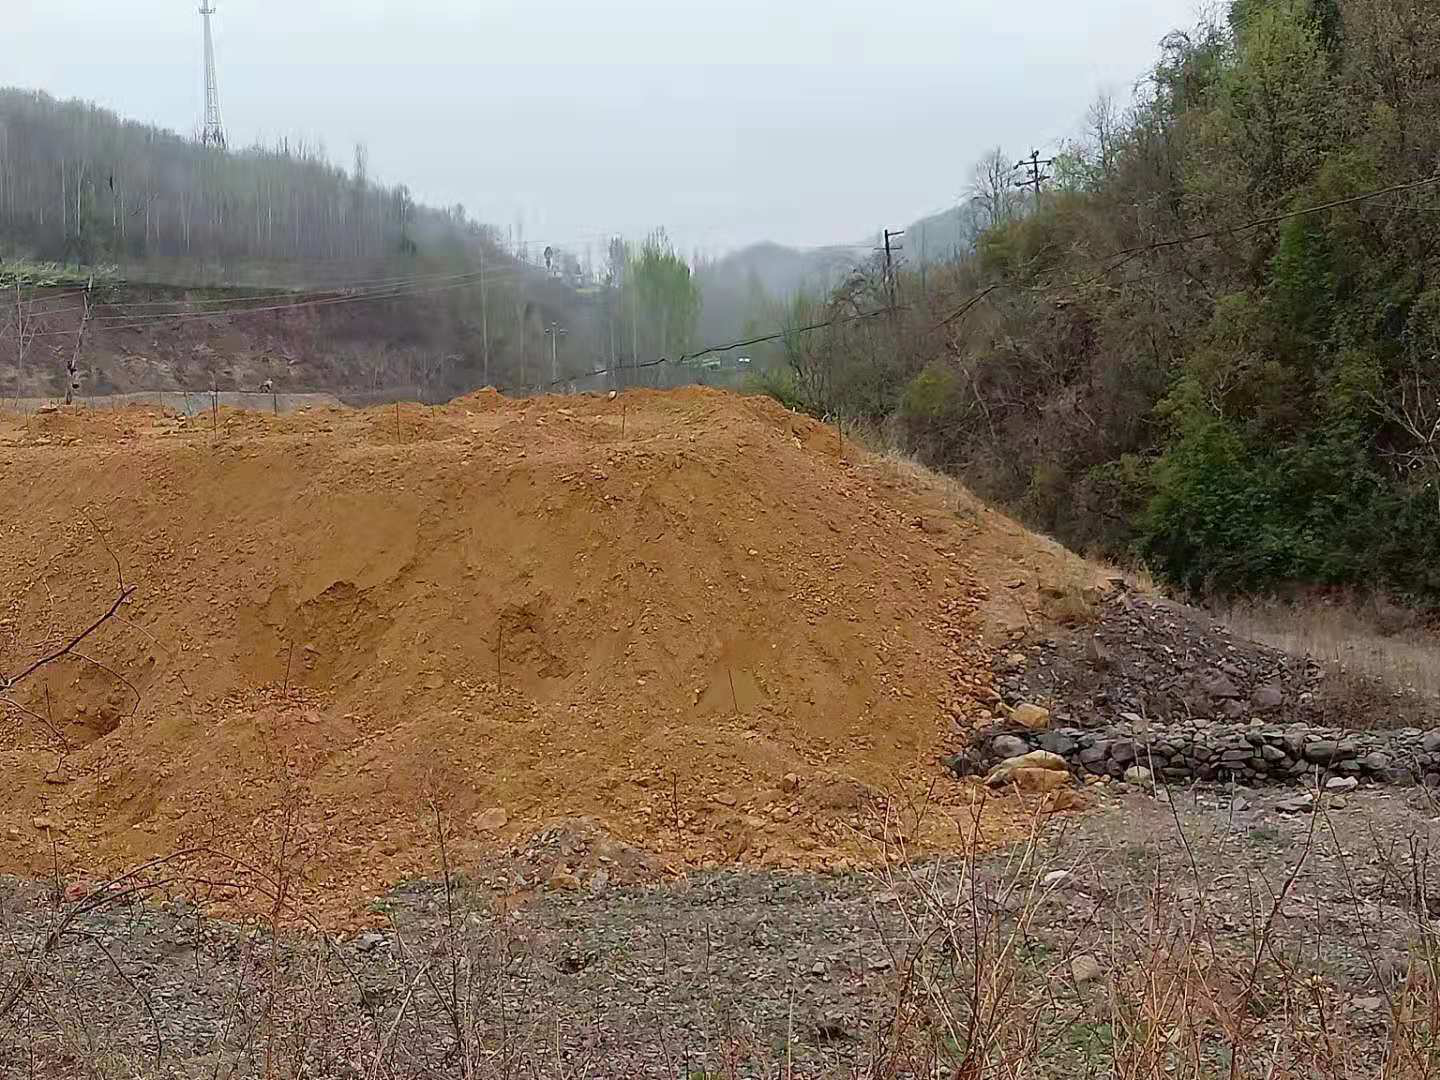 鲁山县一铅锌厂矿渣掩埋河道生态环境局督办多次无果